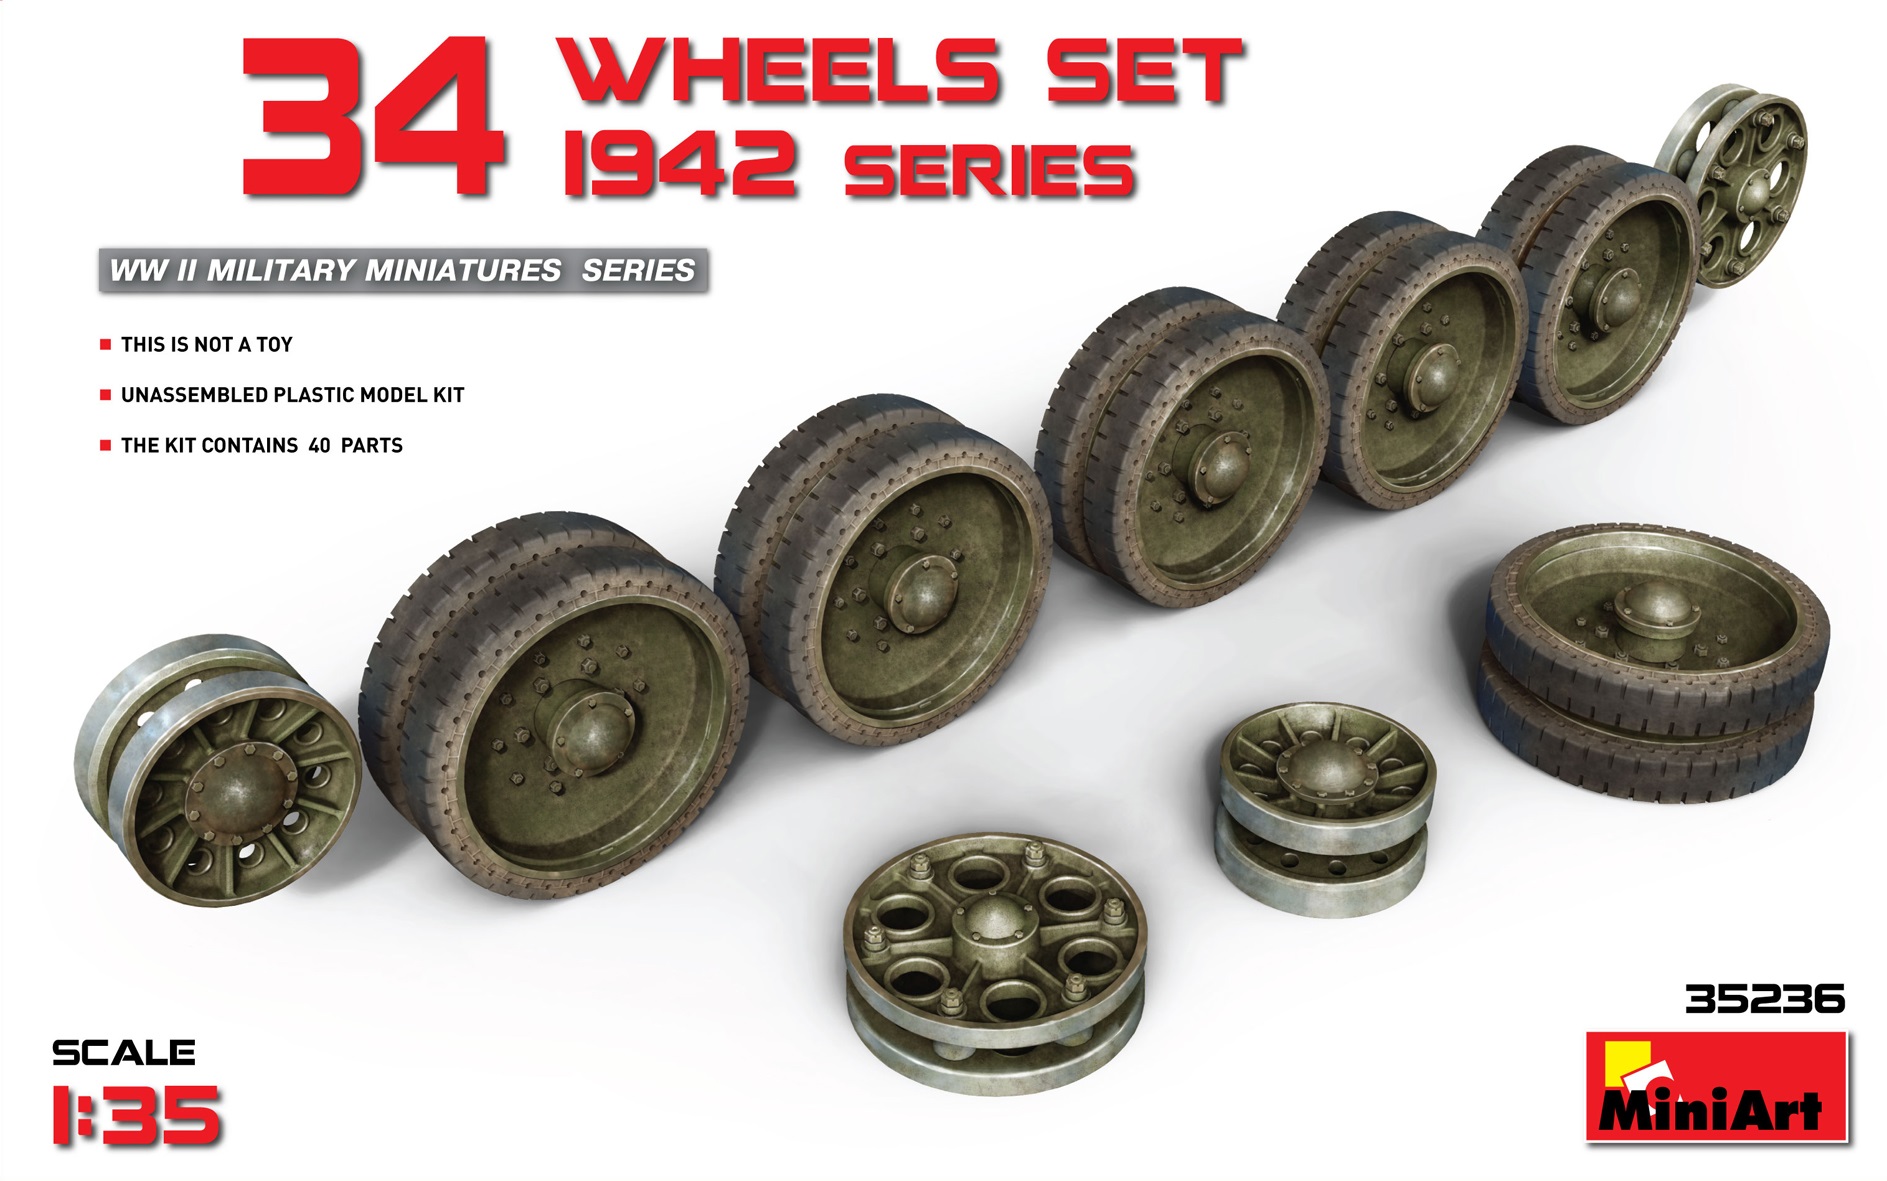 35236  дополнения из пластика  Танк-34 WHEELS SET 1942 series  (1:35)